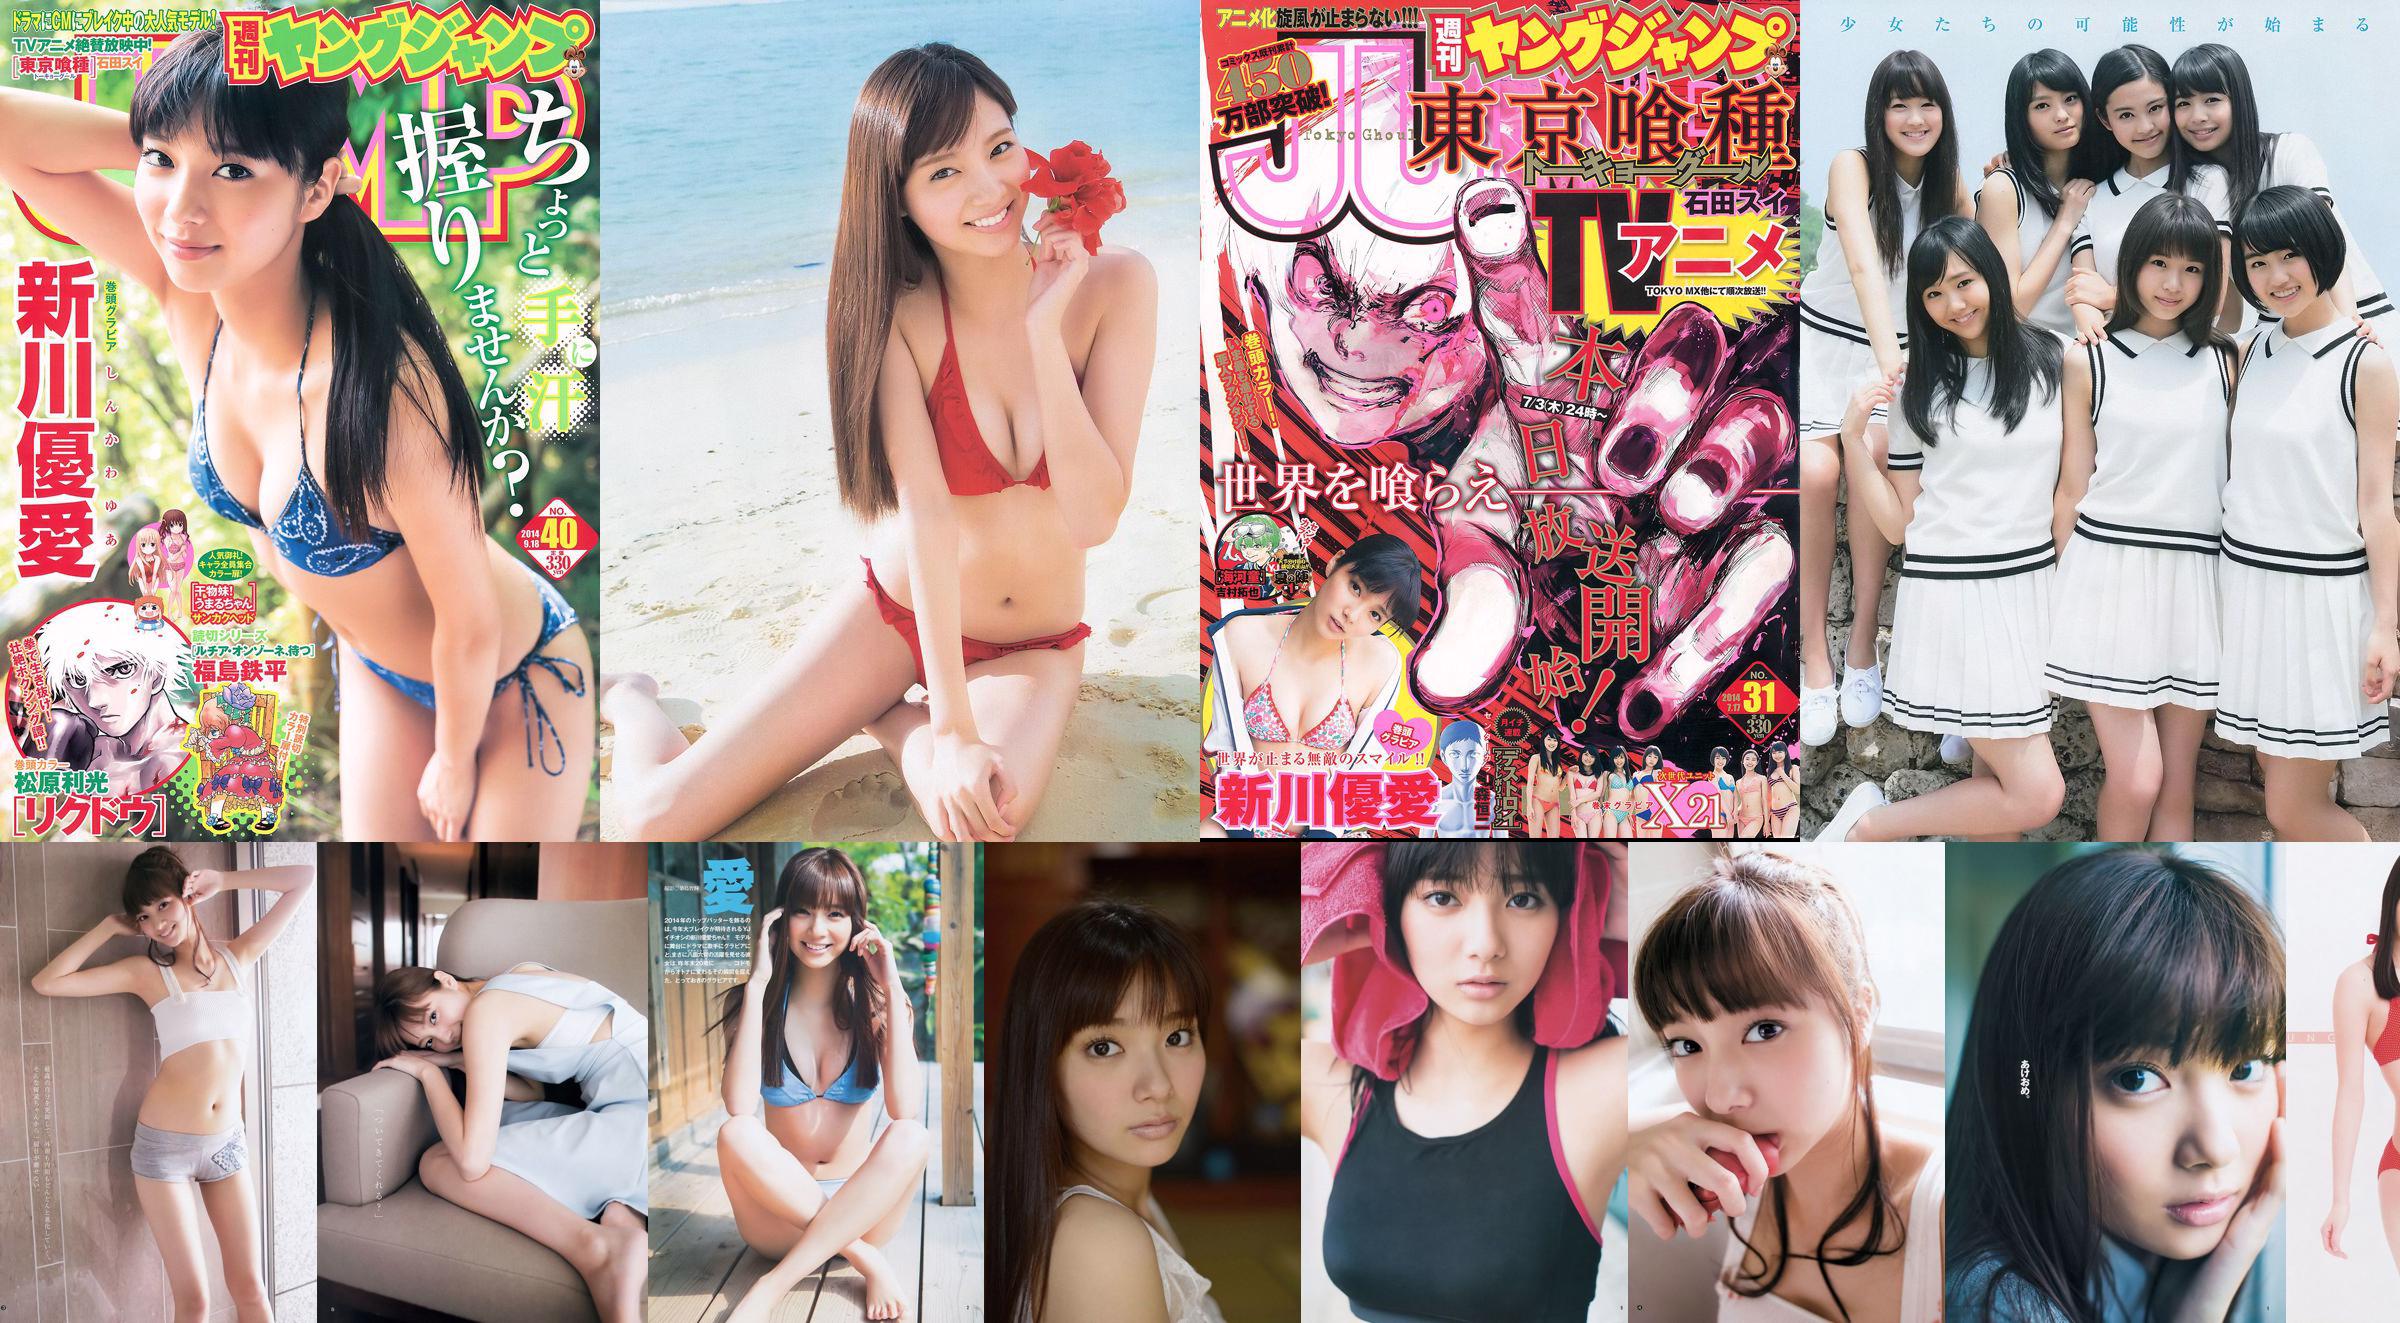 Yua Shinkawa 48 Groupe Hinako Kinoshita [Saut hebdomadaire des jeunes] 2014 No.06-07 Photographie No.3fa84a Page 1